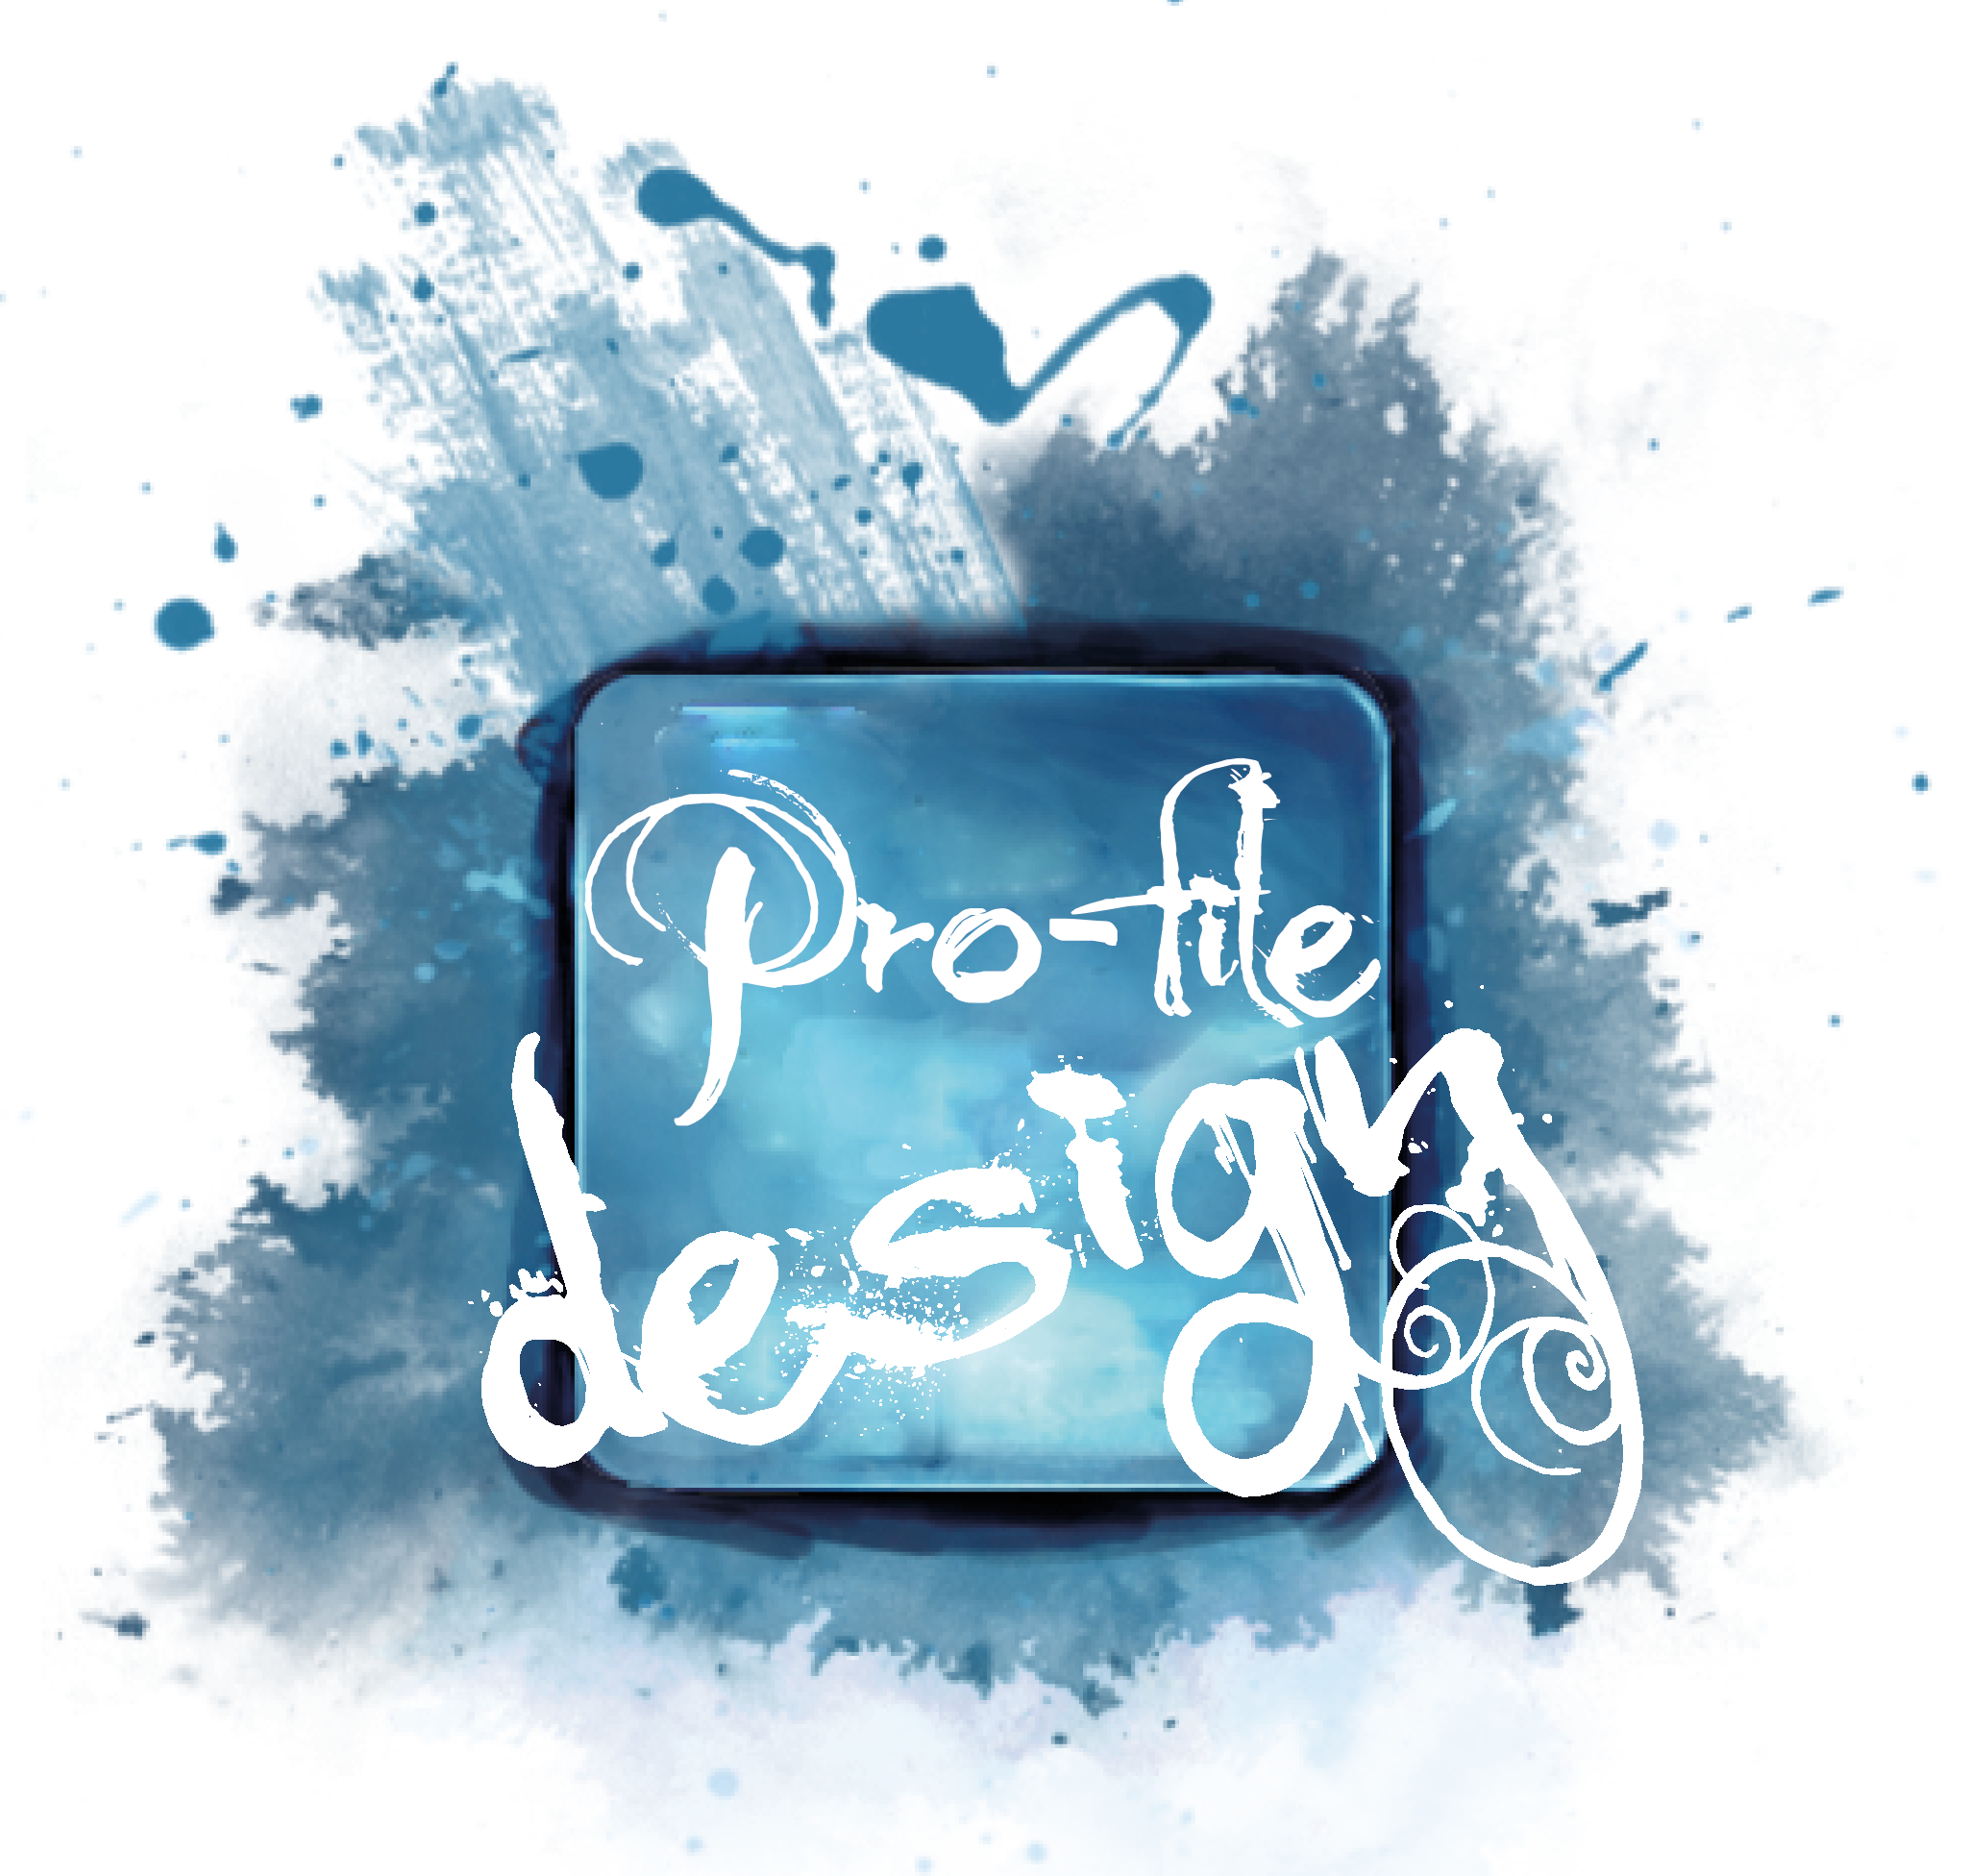 Designer Graphique – Création sites Web Pro-file-design